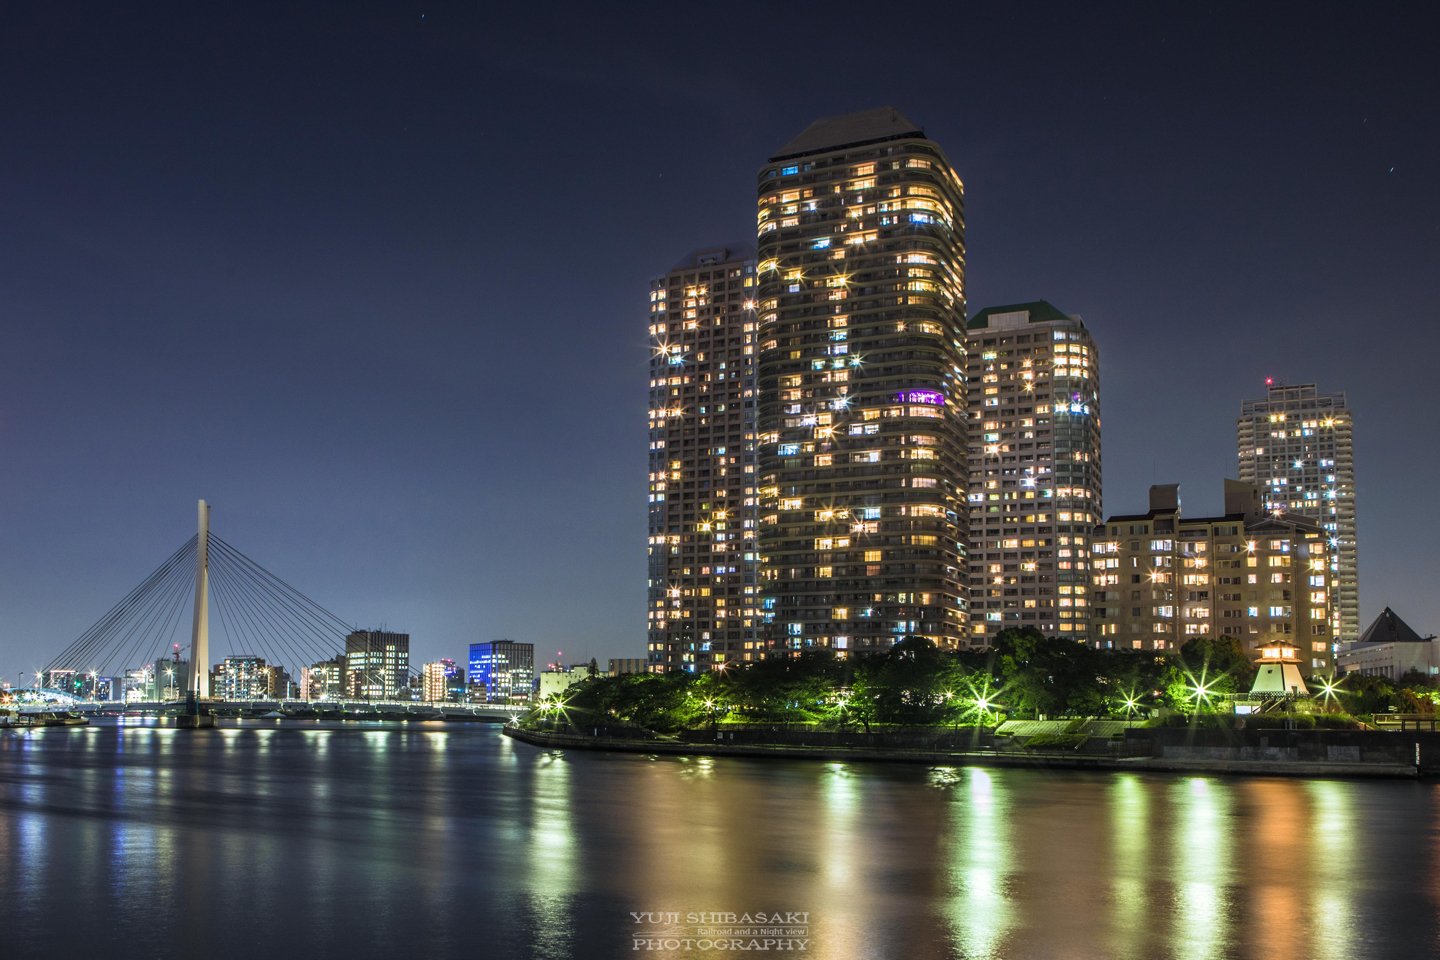 Yuji Shibasaki Photo 中央大橋とスカイツリー 久しぶりに隅田川に来ました 思えば都内夜景の原点は 隅田川の橋のライトアップ 最後はなんだかマンション広告の写真みたいになってしまった T Co Al4zbvvg97 Twitter